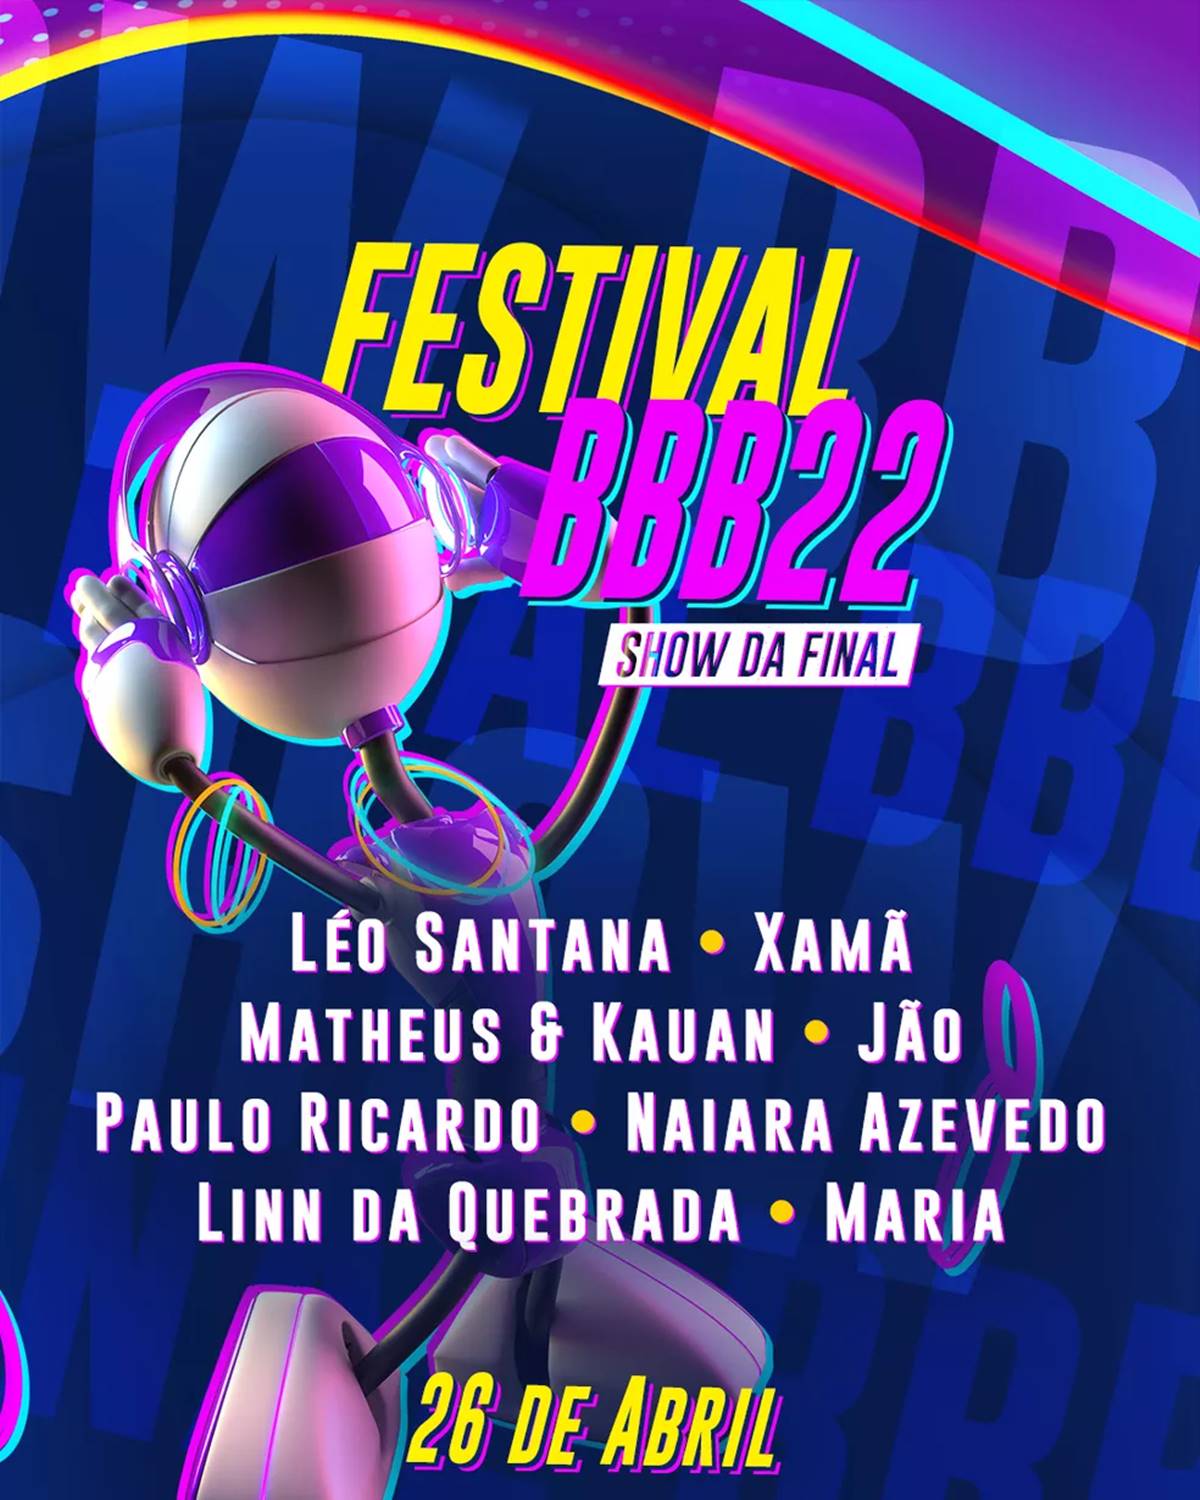 Linn da Quebrada e Maria vão se apresentar na final do BBB 22, veja lista dos shows